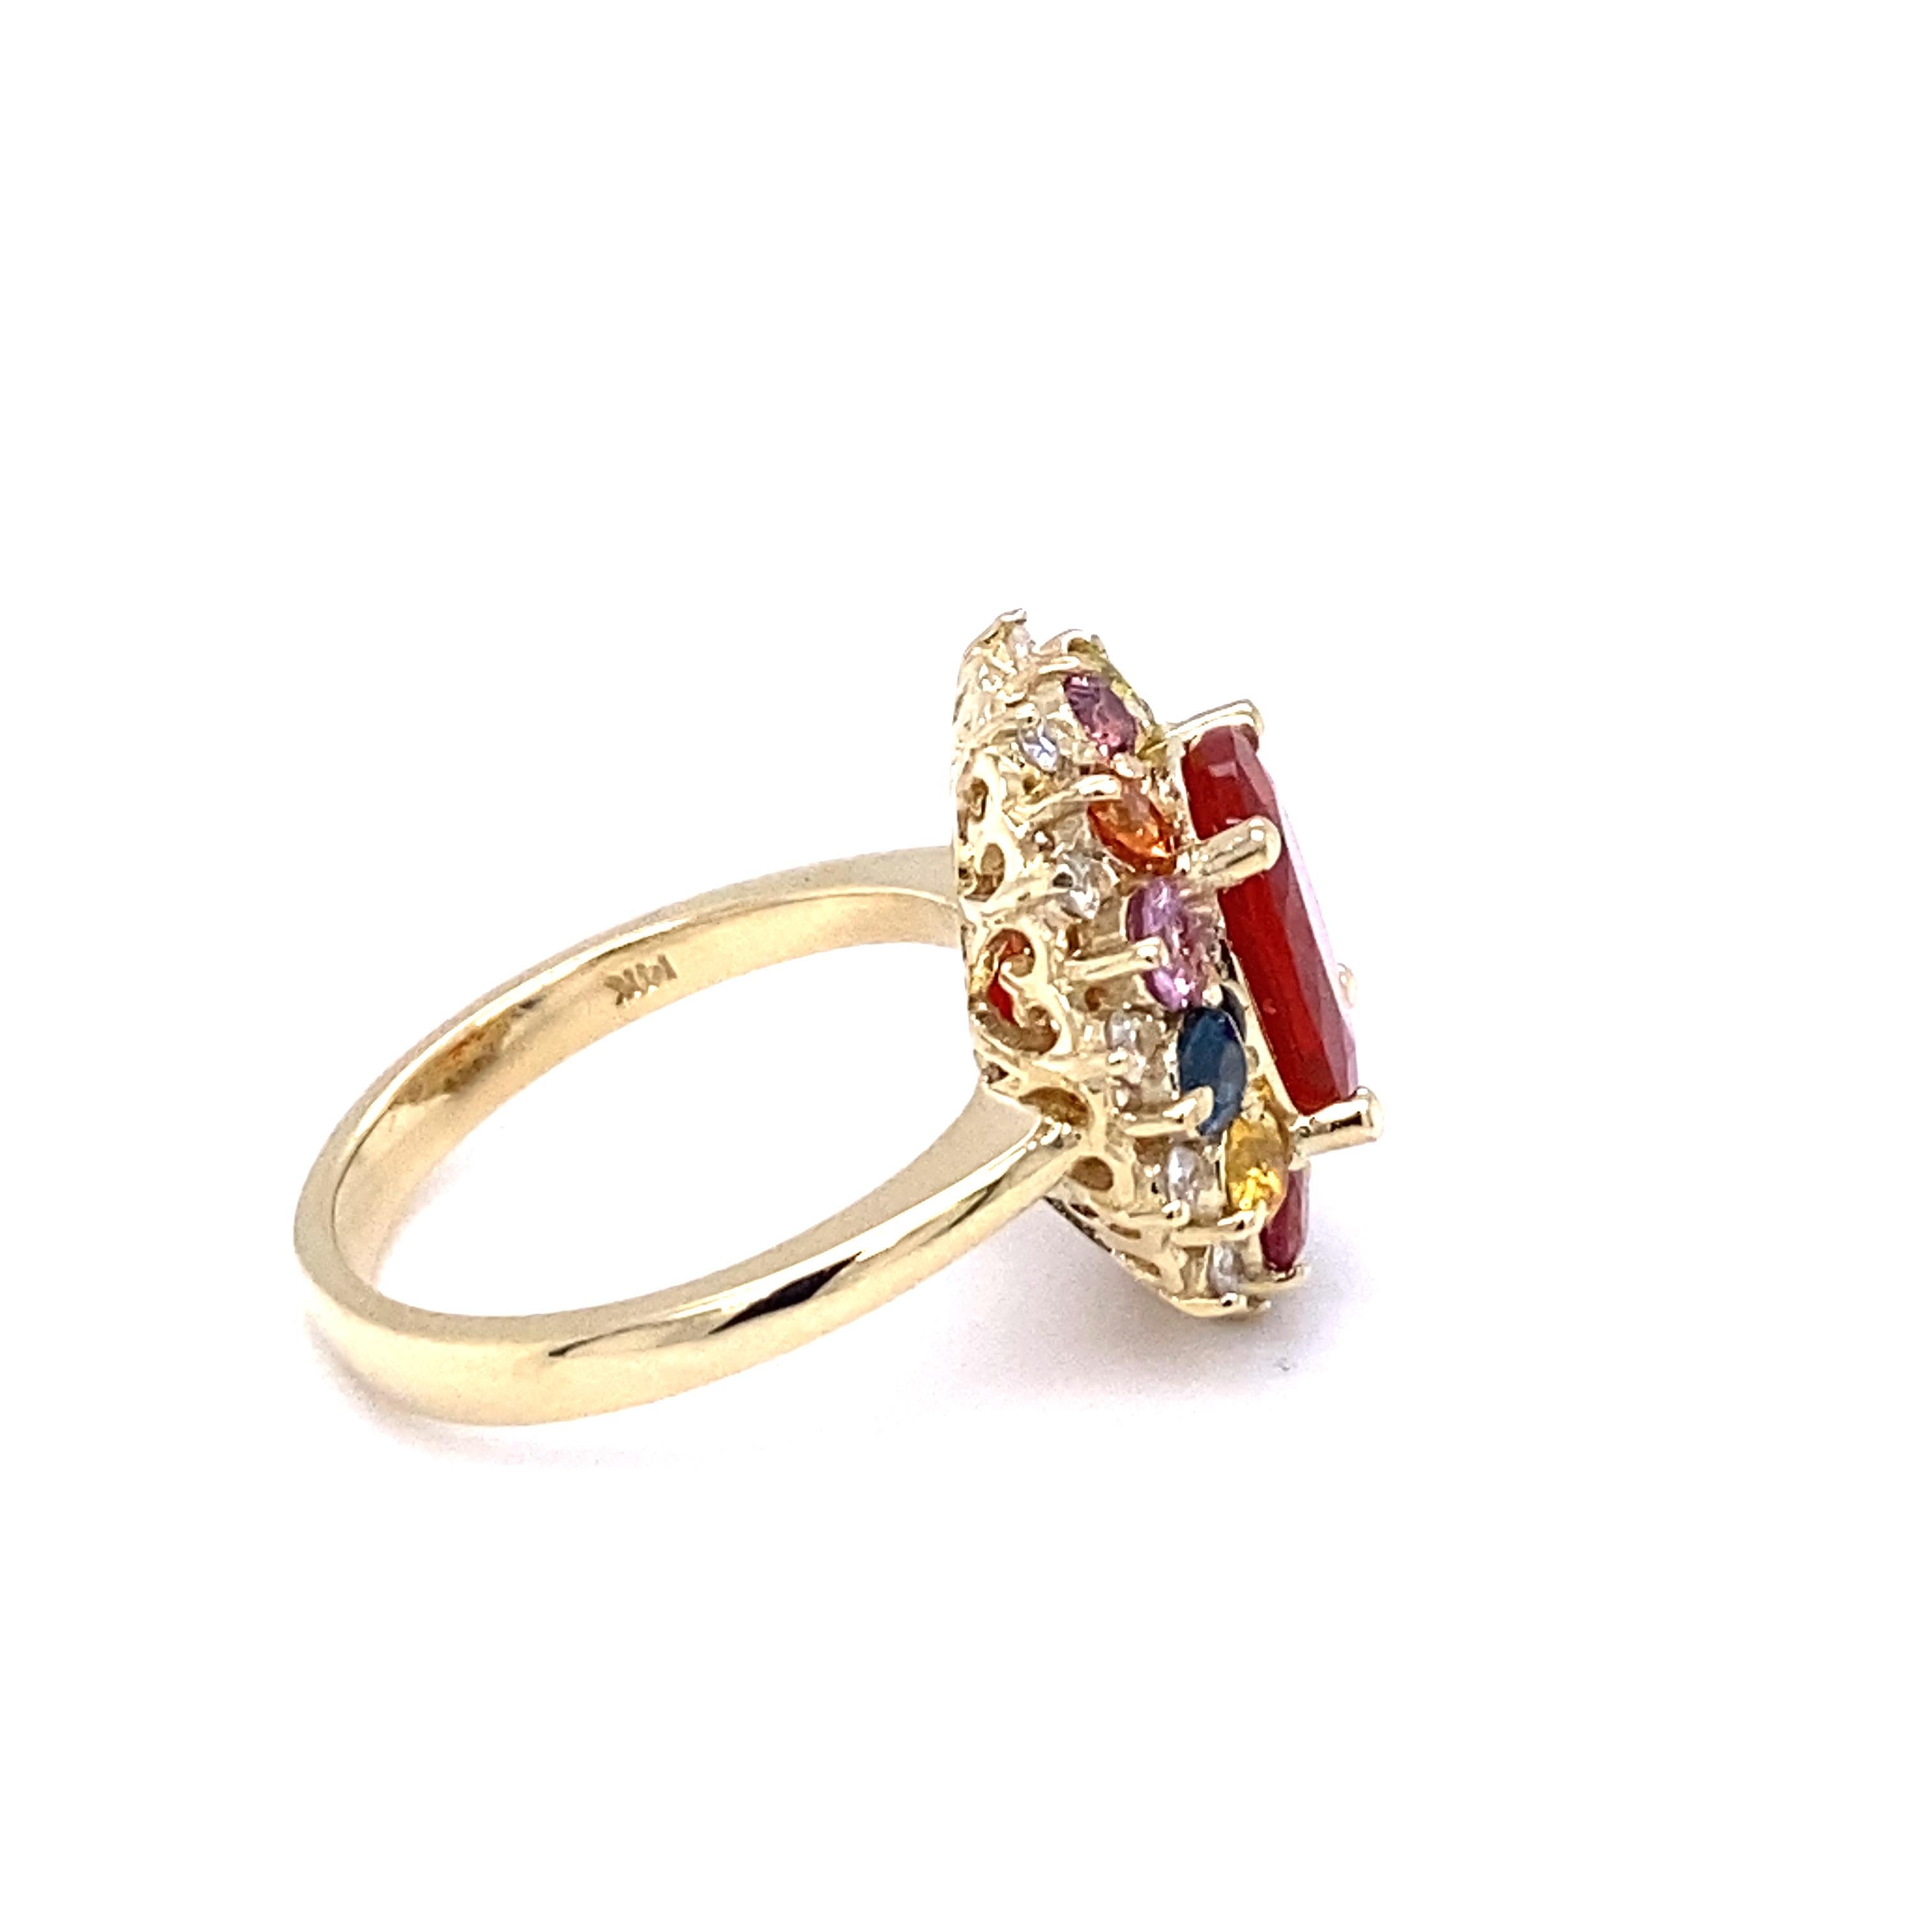 Women's 3.58 Carat Oval Cut Fire Opal Sapphire Diamond 14 Karat Yellow Gold Ring